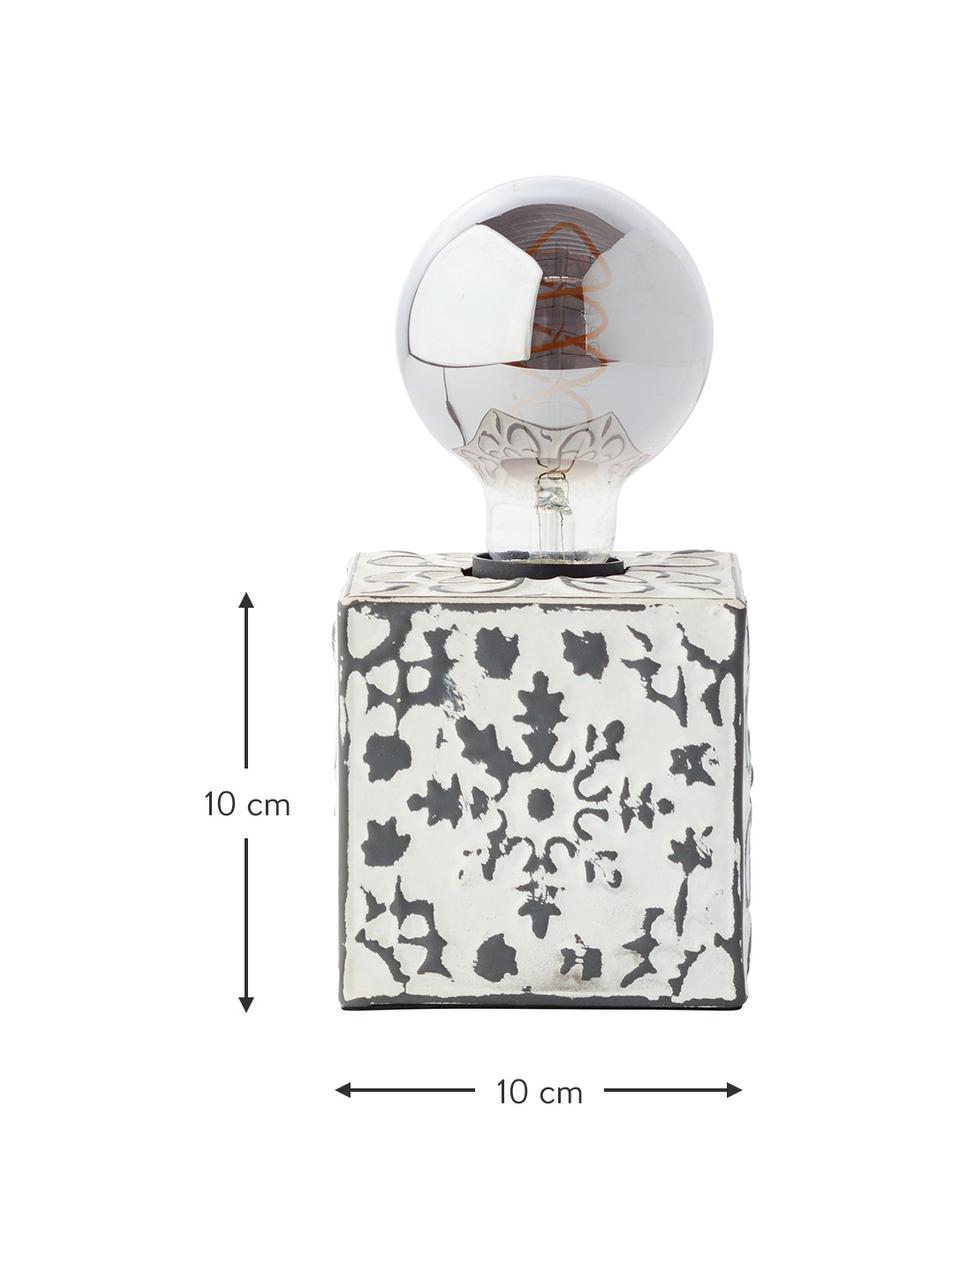 Kleine Tischlampe Vagos mit Antik-Finish, Creme, Schwarz, 10 x 10 cm